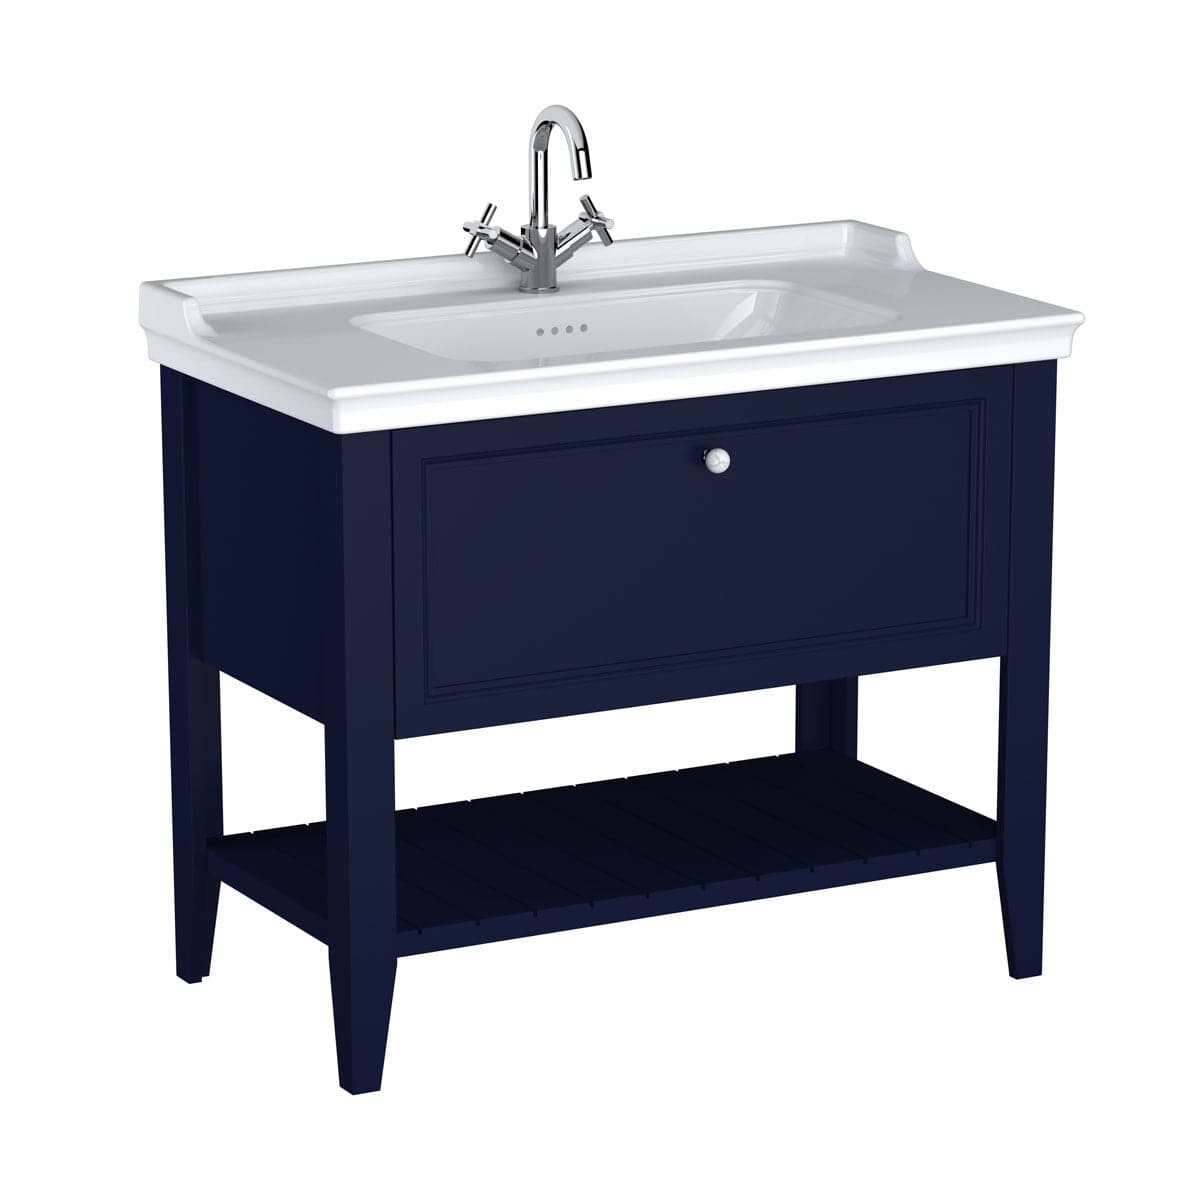 VitrA Valarte Set 100 cm Möbelwaschtisch + Waschtischunterschrank 1 Lade Stahlblau (Lack)